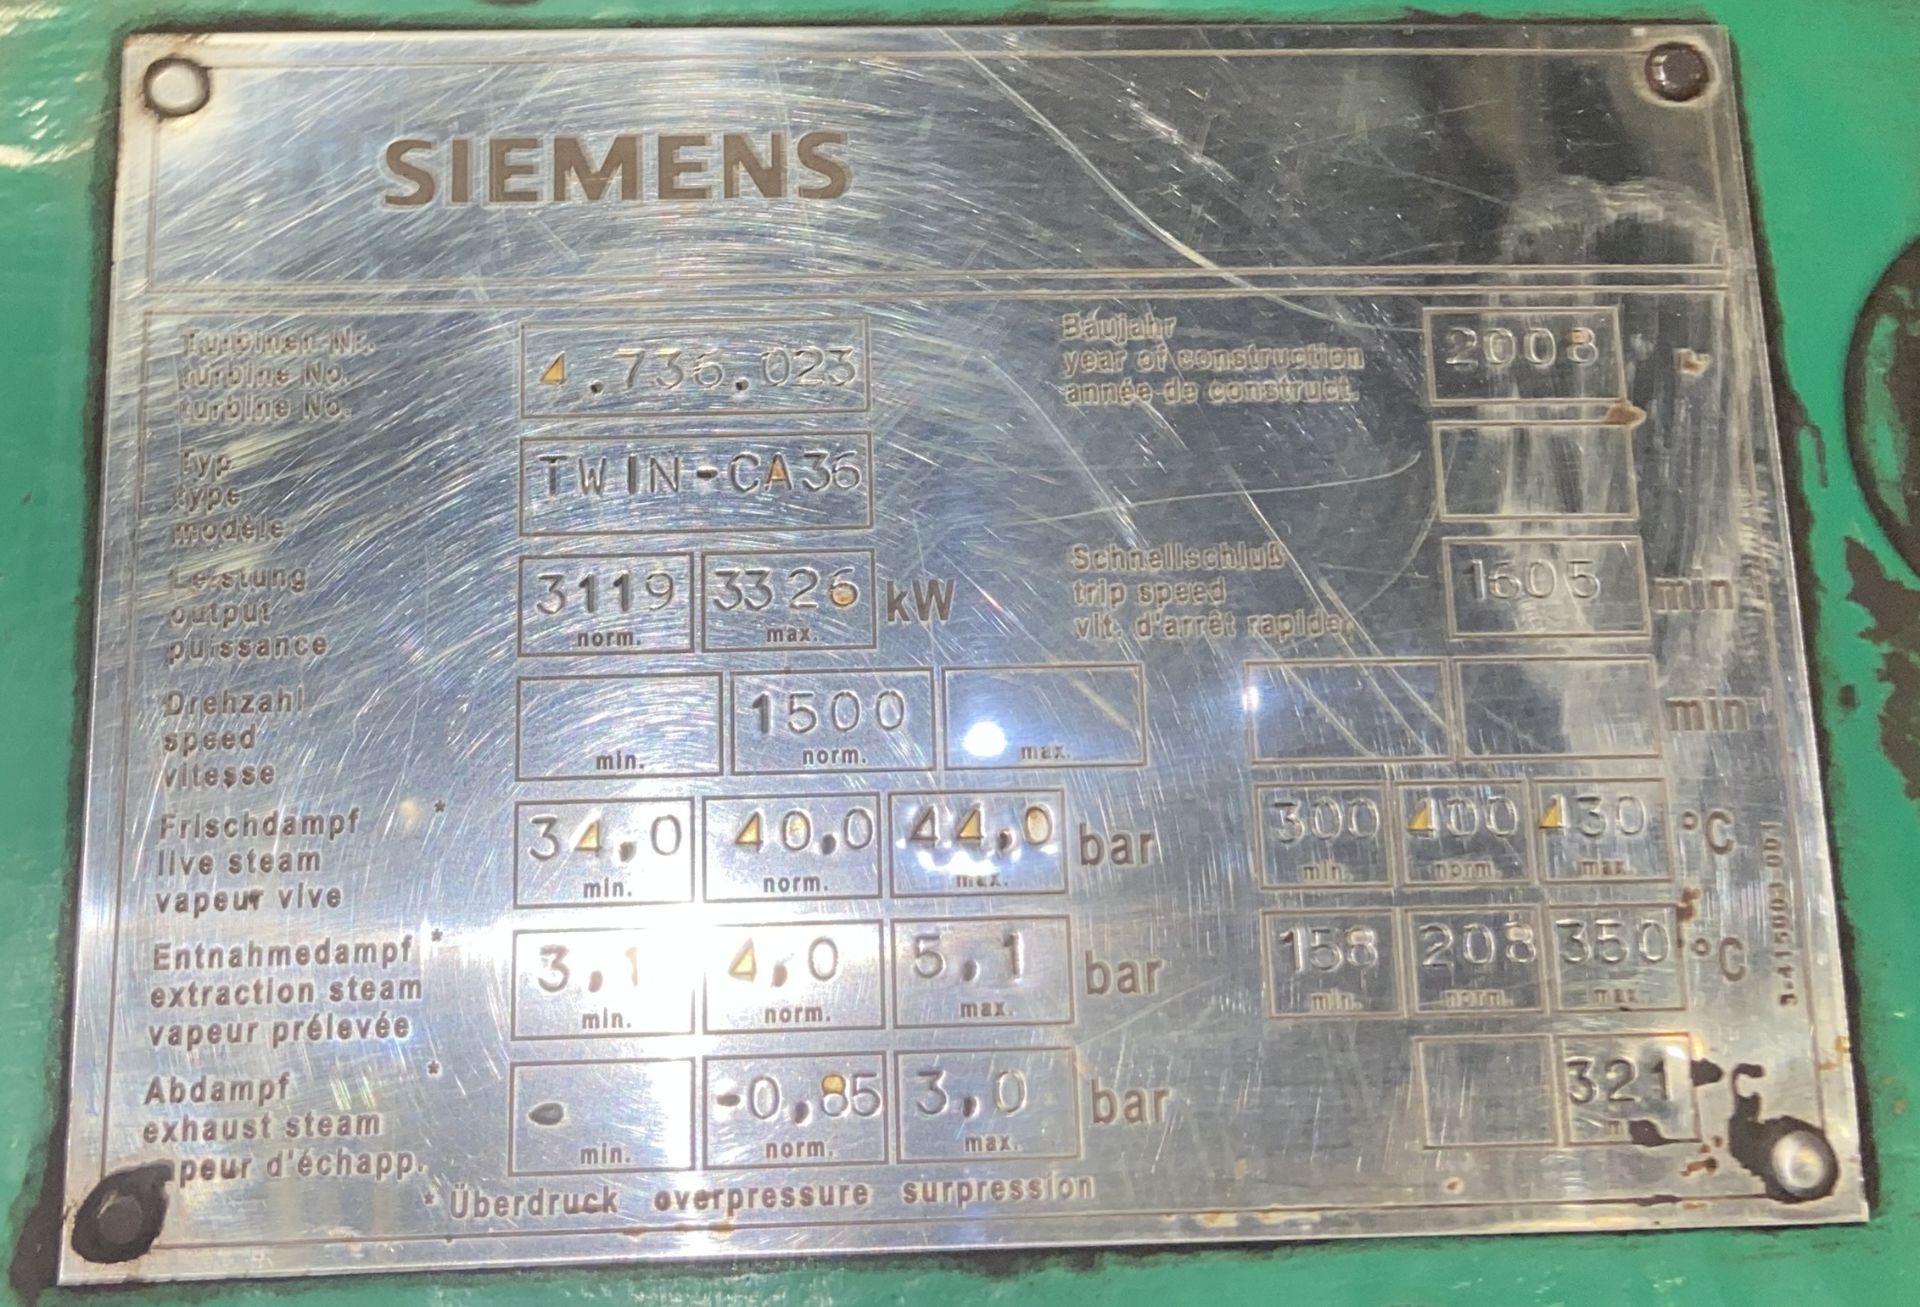 Siemens TWIN-CA36 STEAM TURBINE, serial no. 4.736.023, year of manufacture 2008, output 3119kW ( - Bild 3 aus 9